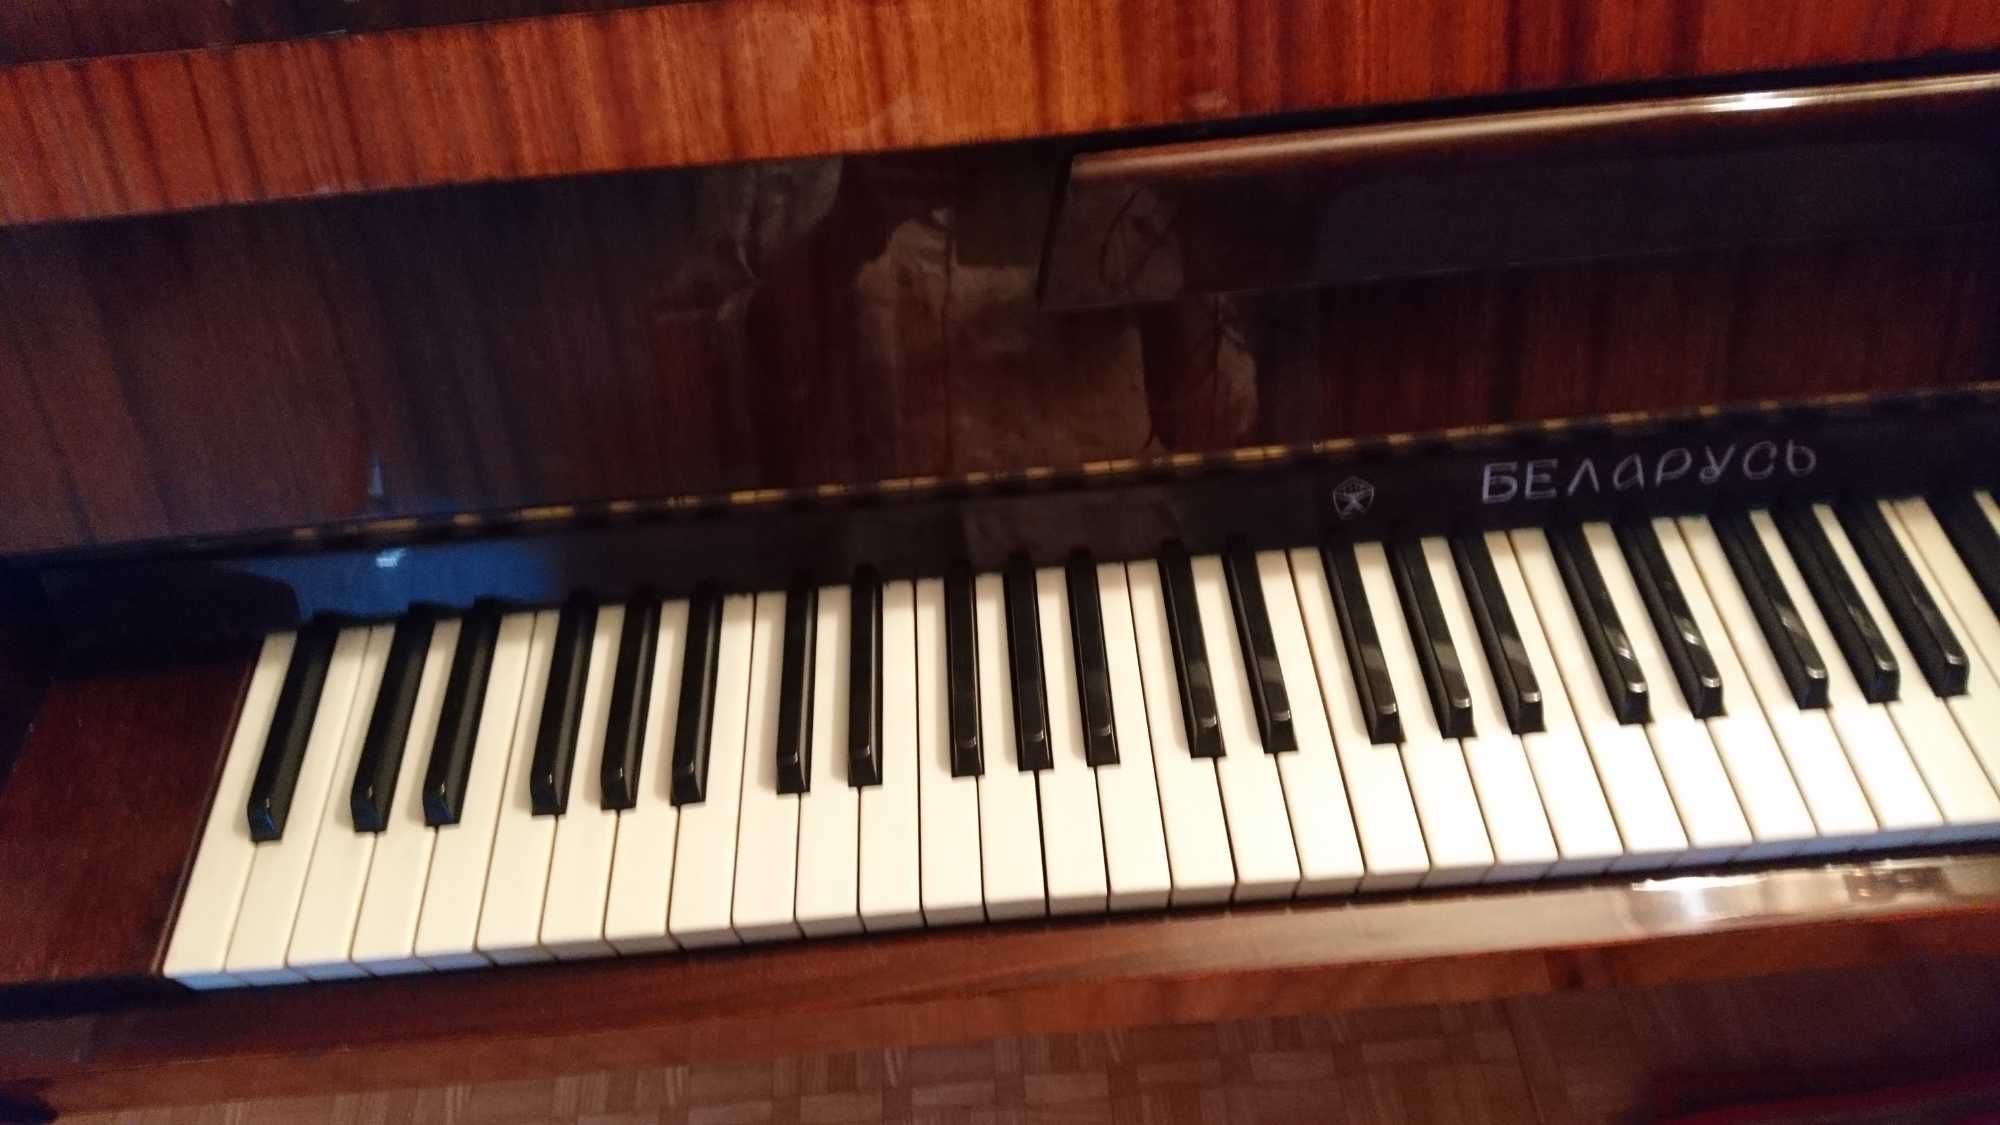 Пианино Беларусь в отличном состоянии, красивый звук